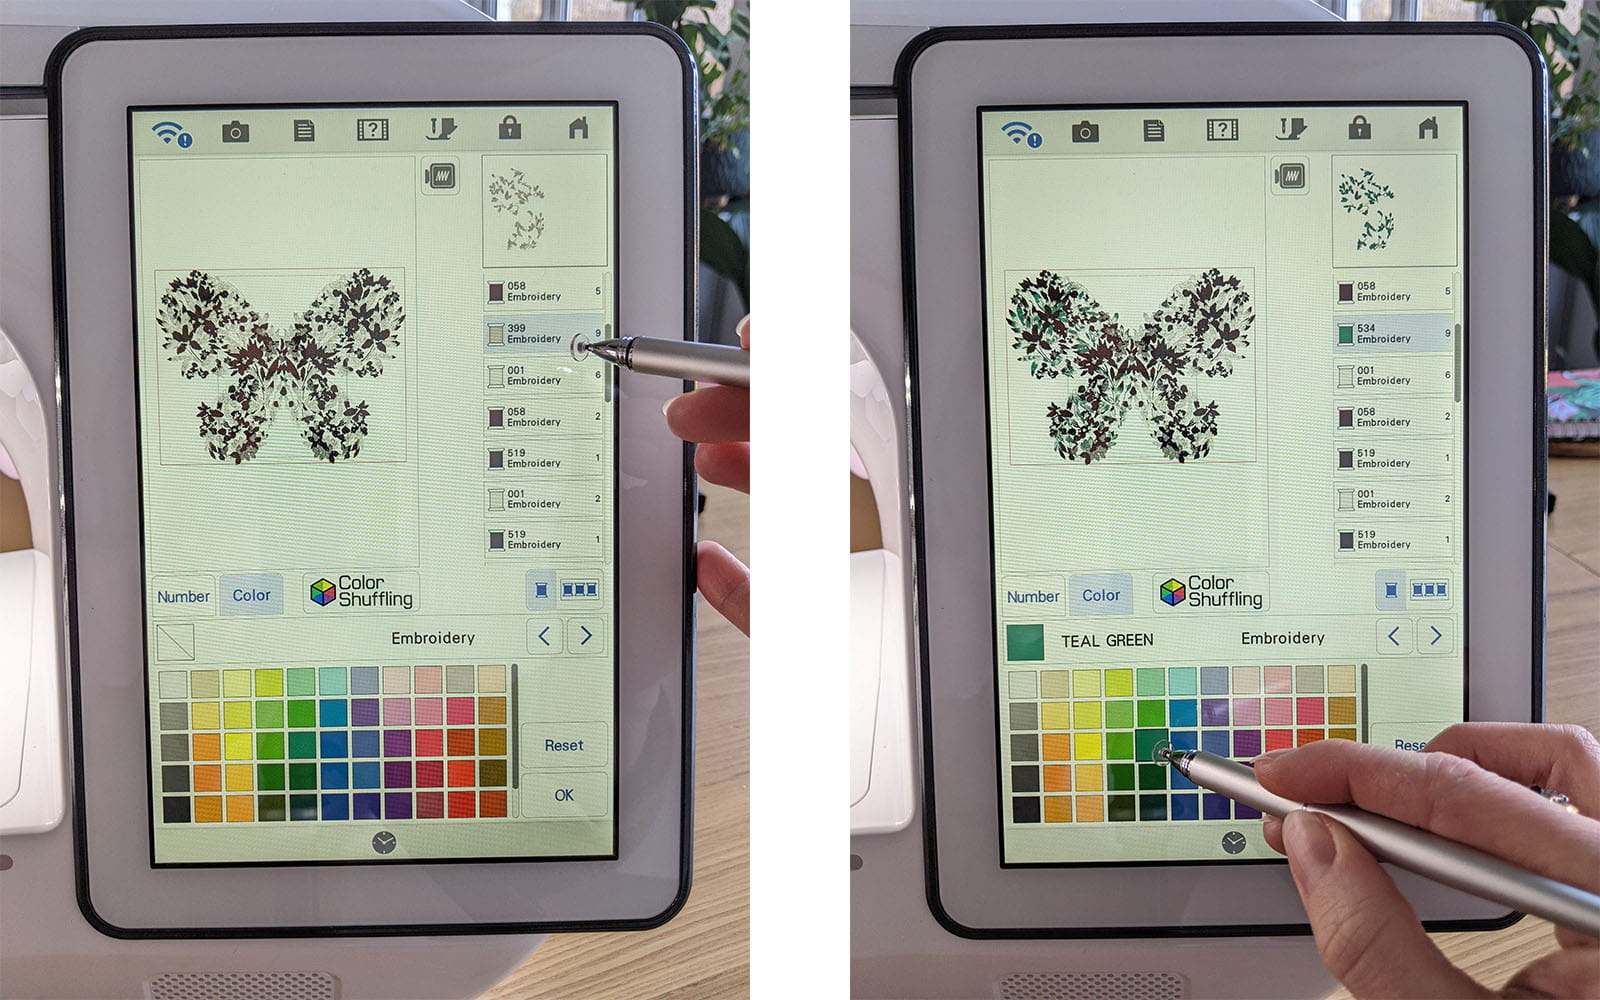 Changer la couleur de la broderie avec le mélange manuel des couleurs sur l'écran XP3